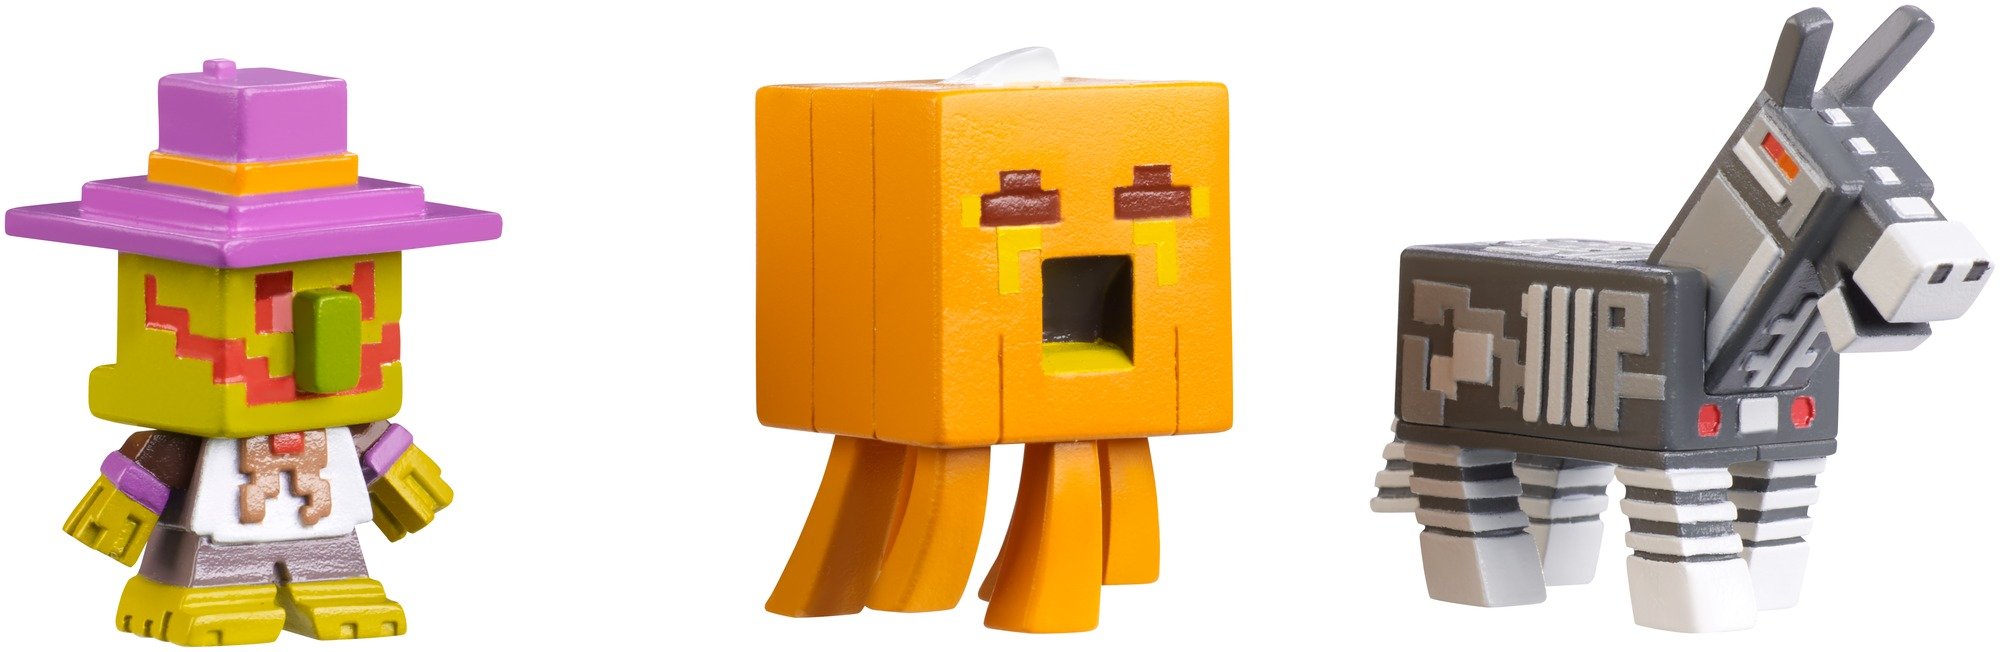 Minecraft Halloween Series Action Figure (3 Pack) - Village Watcher, Pumpkin Ghast & Robot Donkey